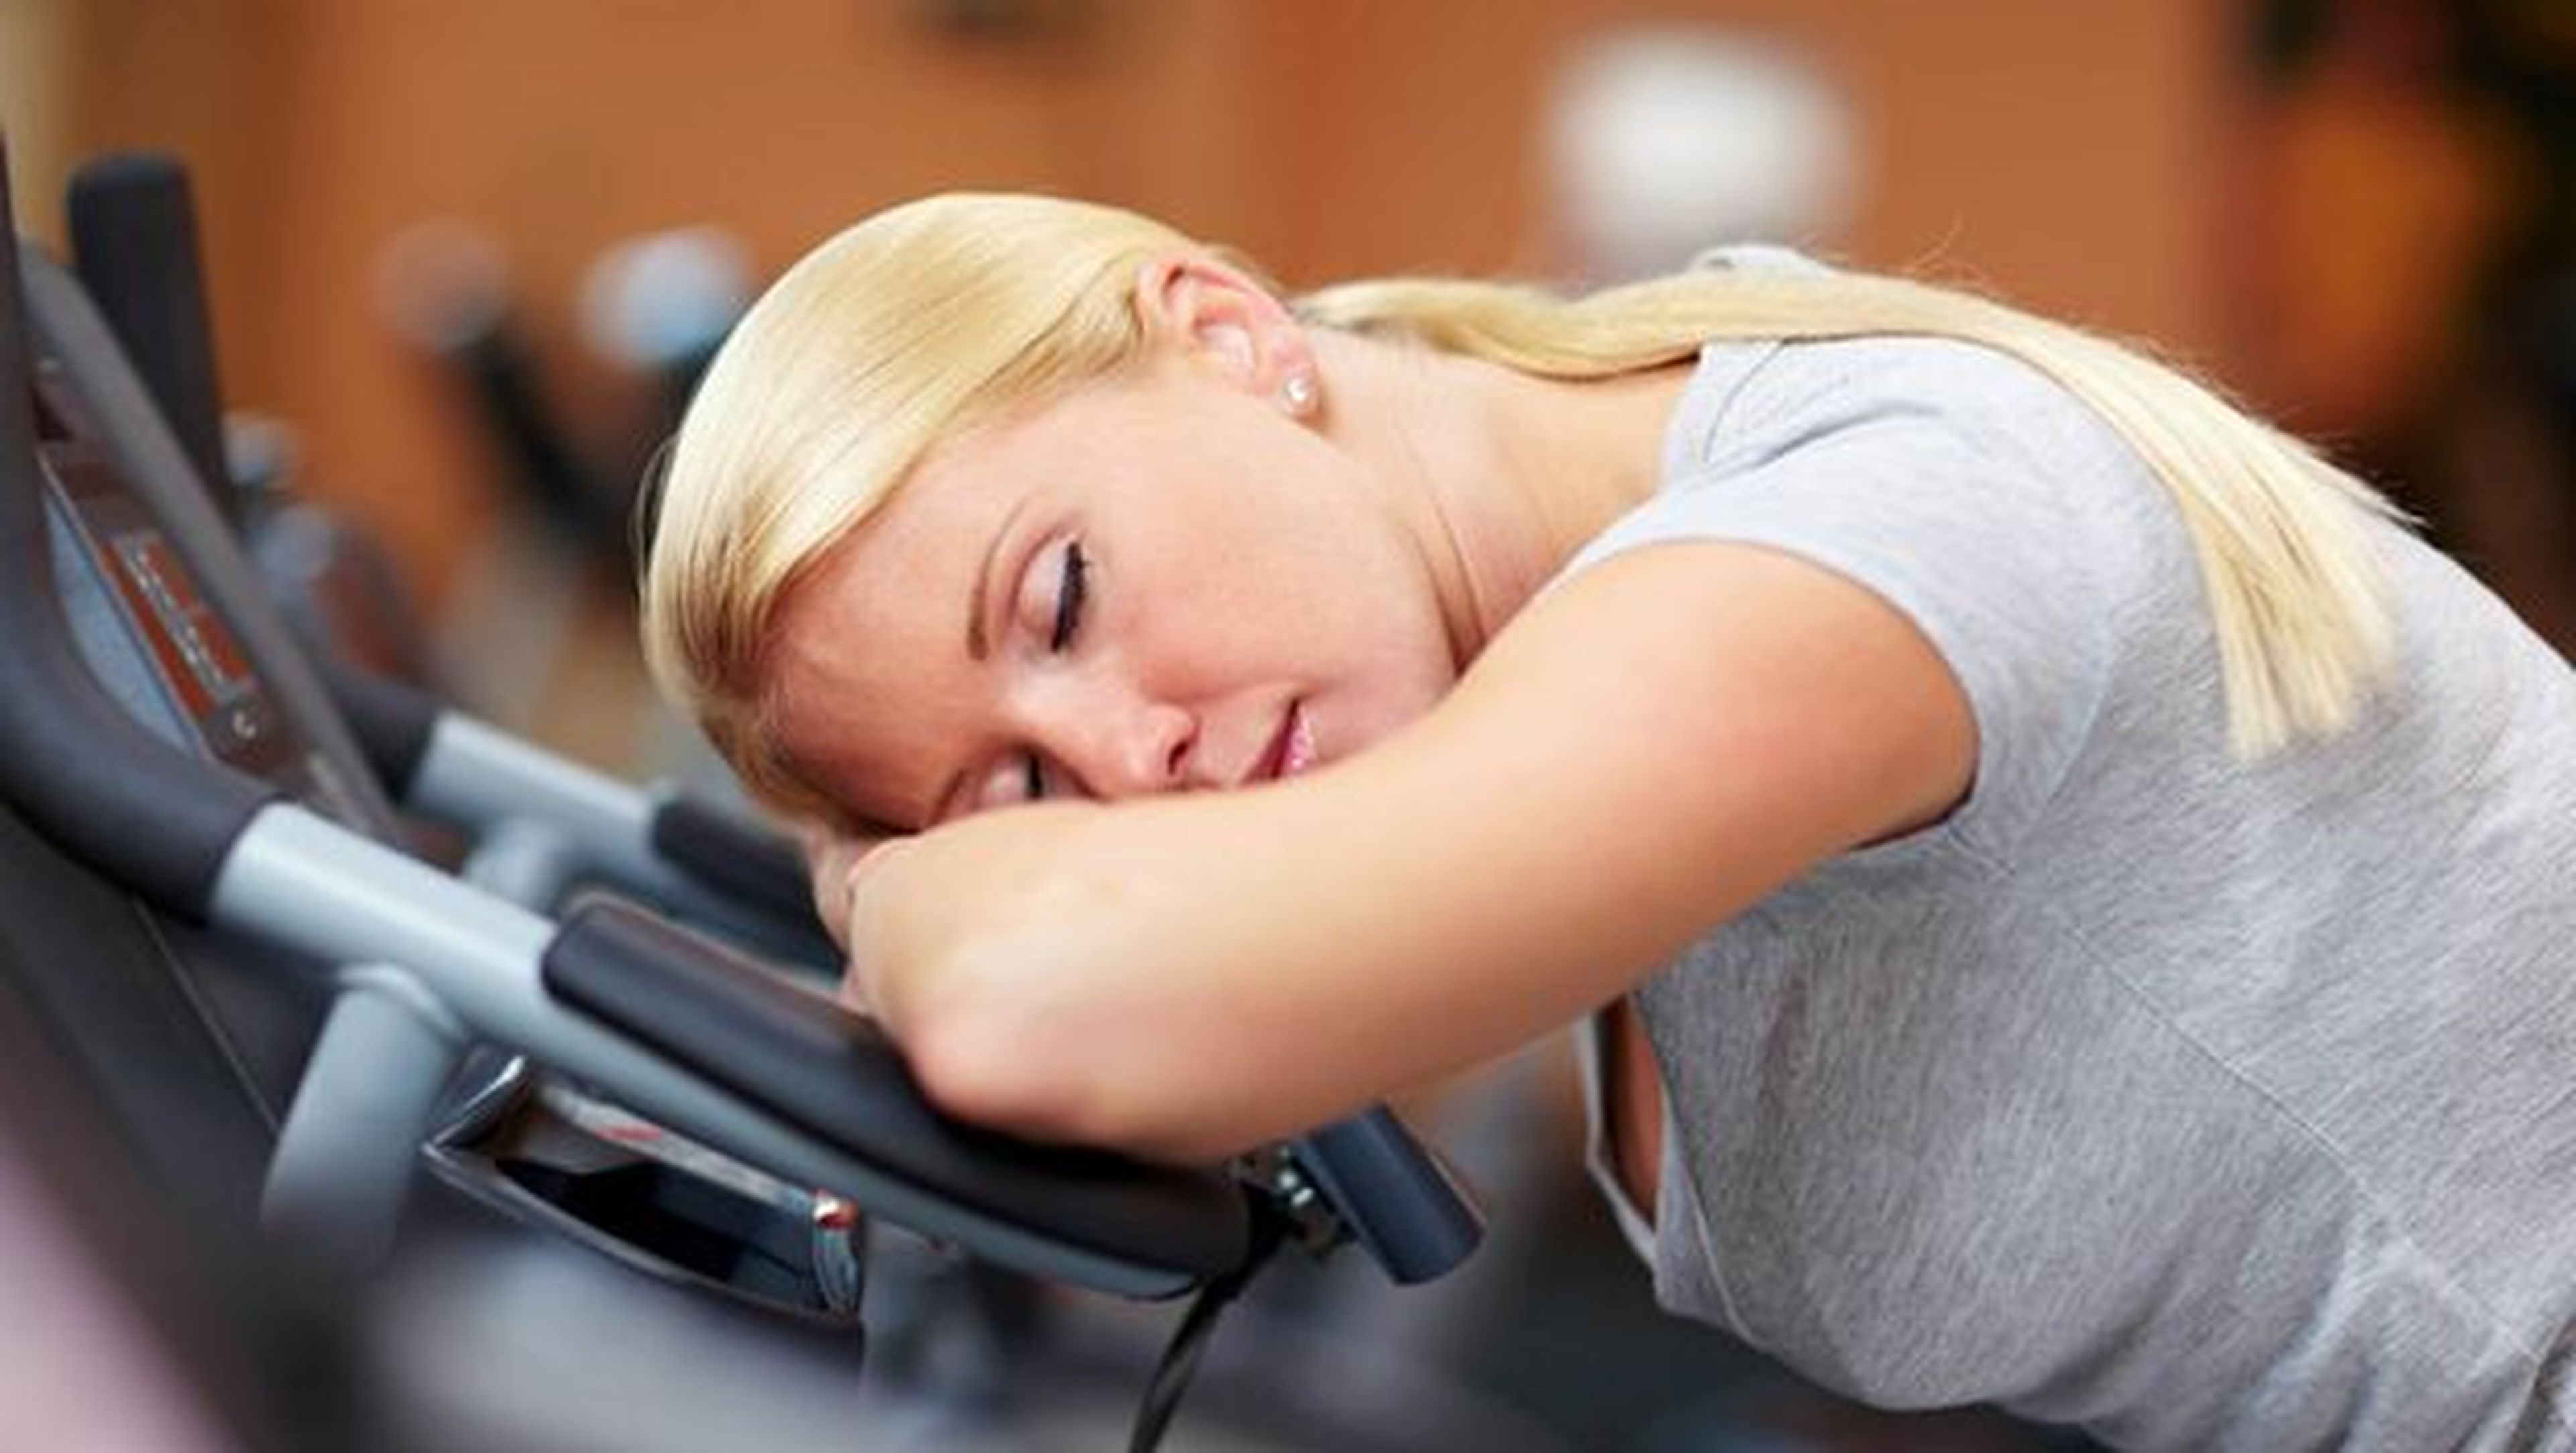 Dormir una hora más o salir a hacer deporte: los expertos hablan